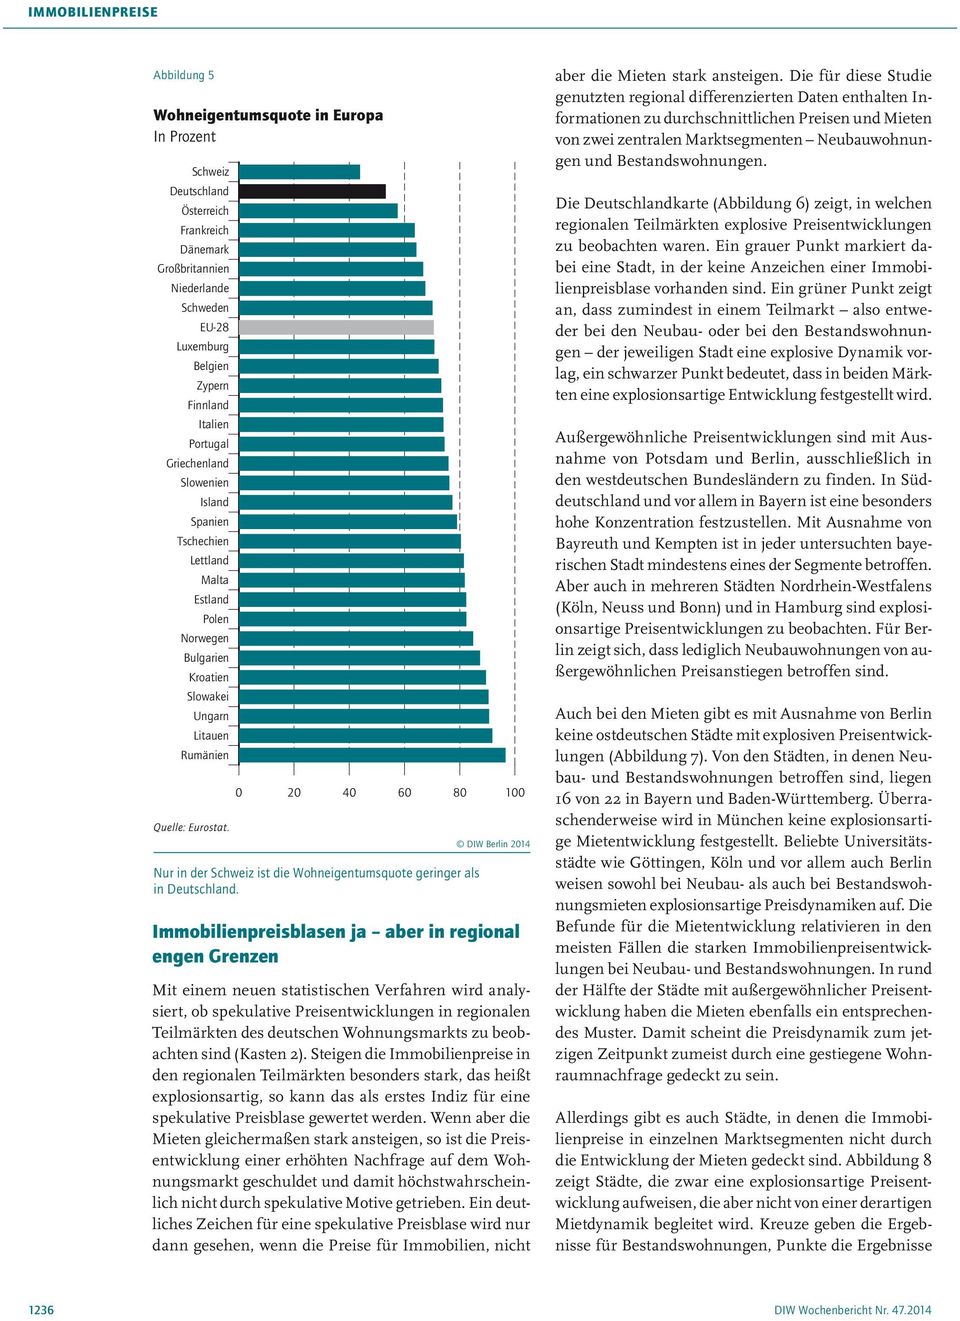 0 80 100 Nur in der Schweiz ist die Wohneigentumsquote geringer als in Deutschland.